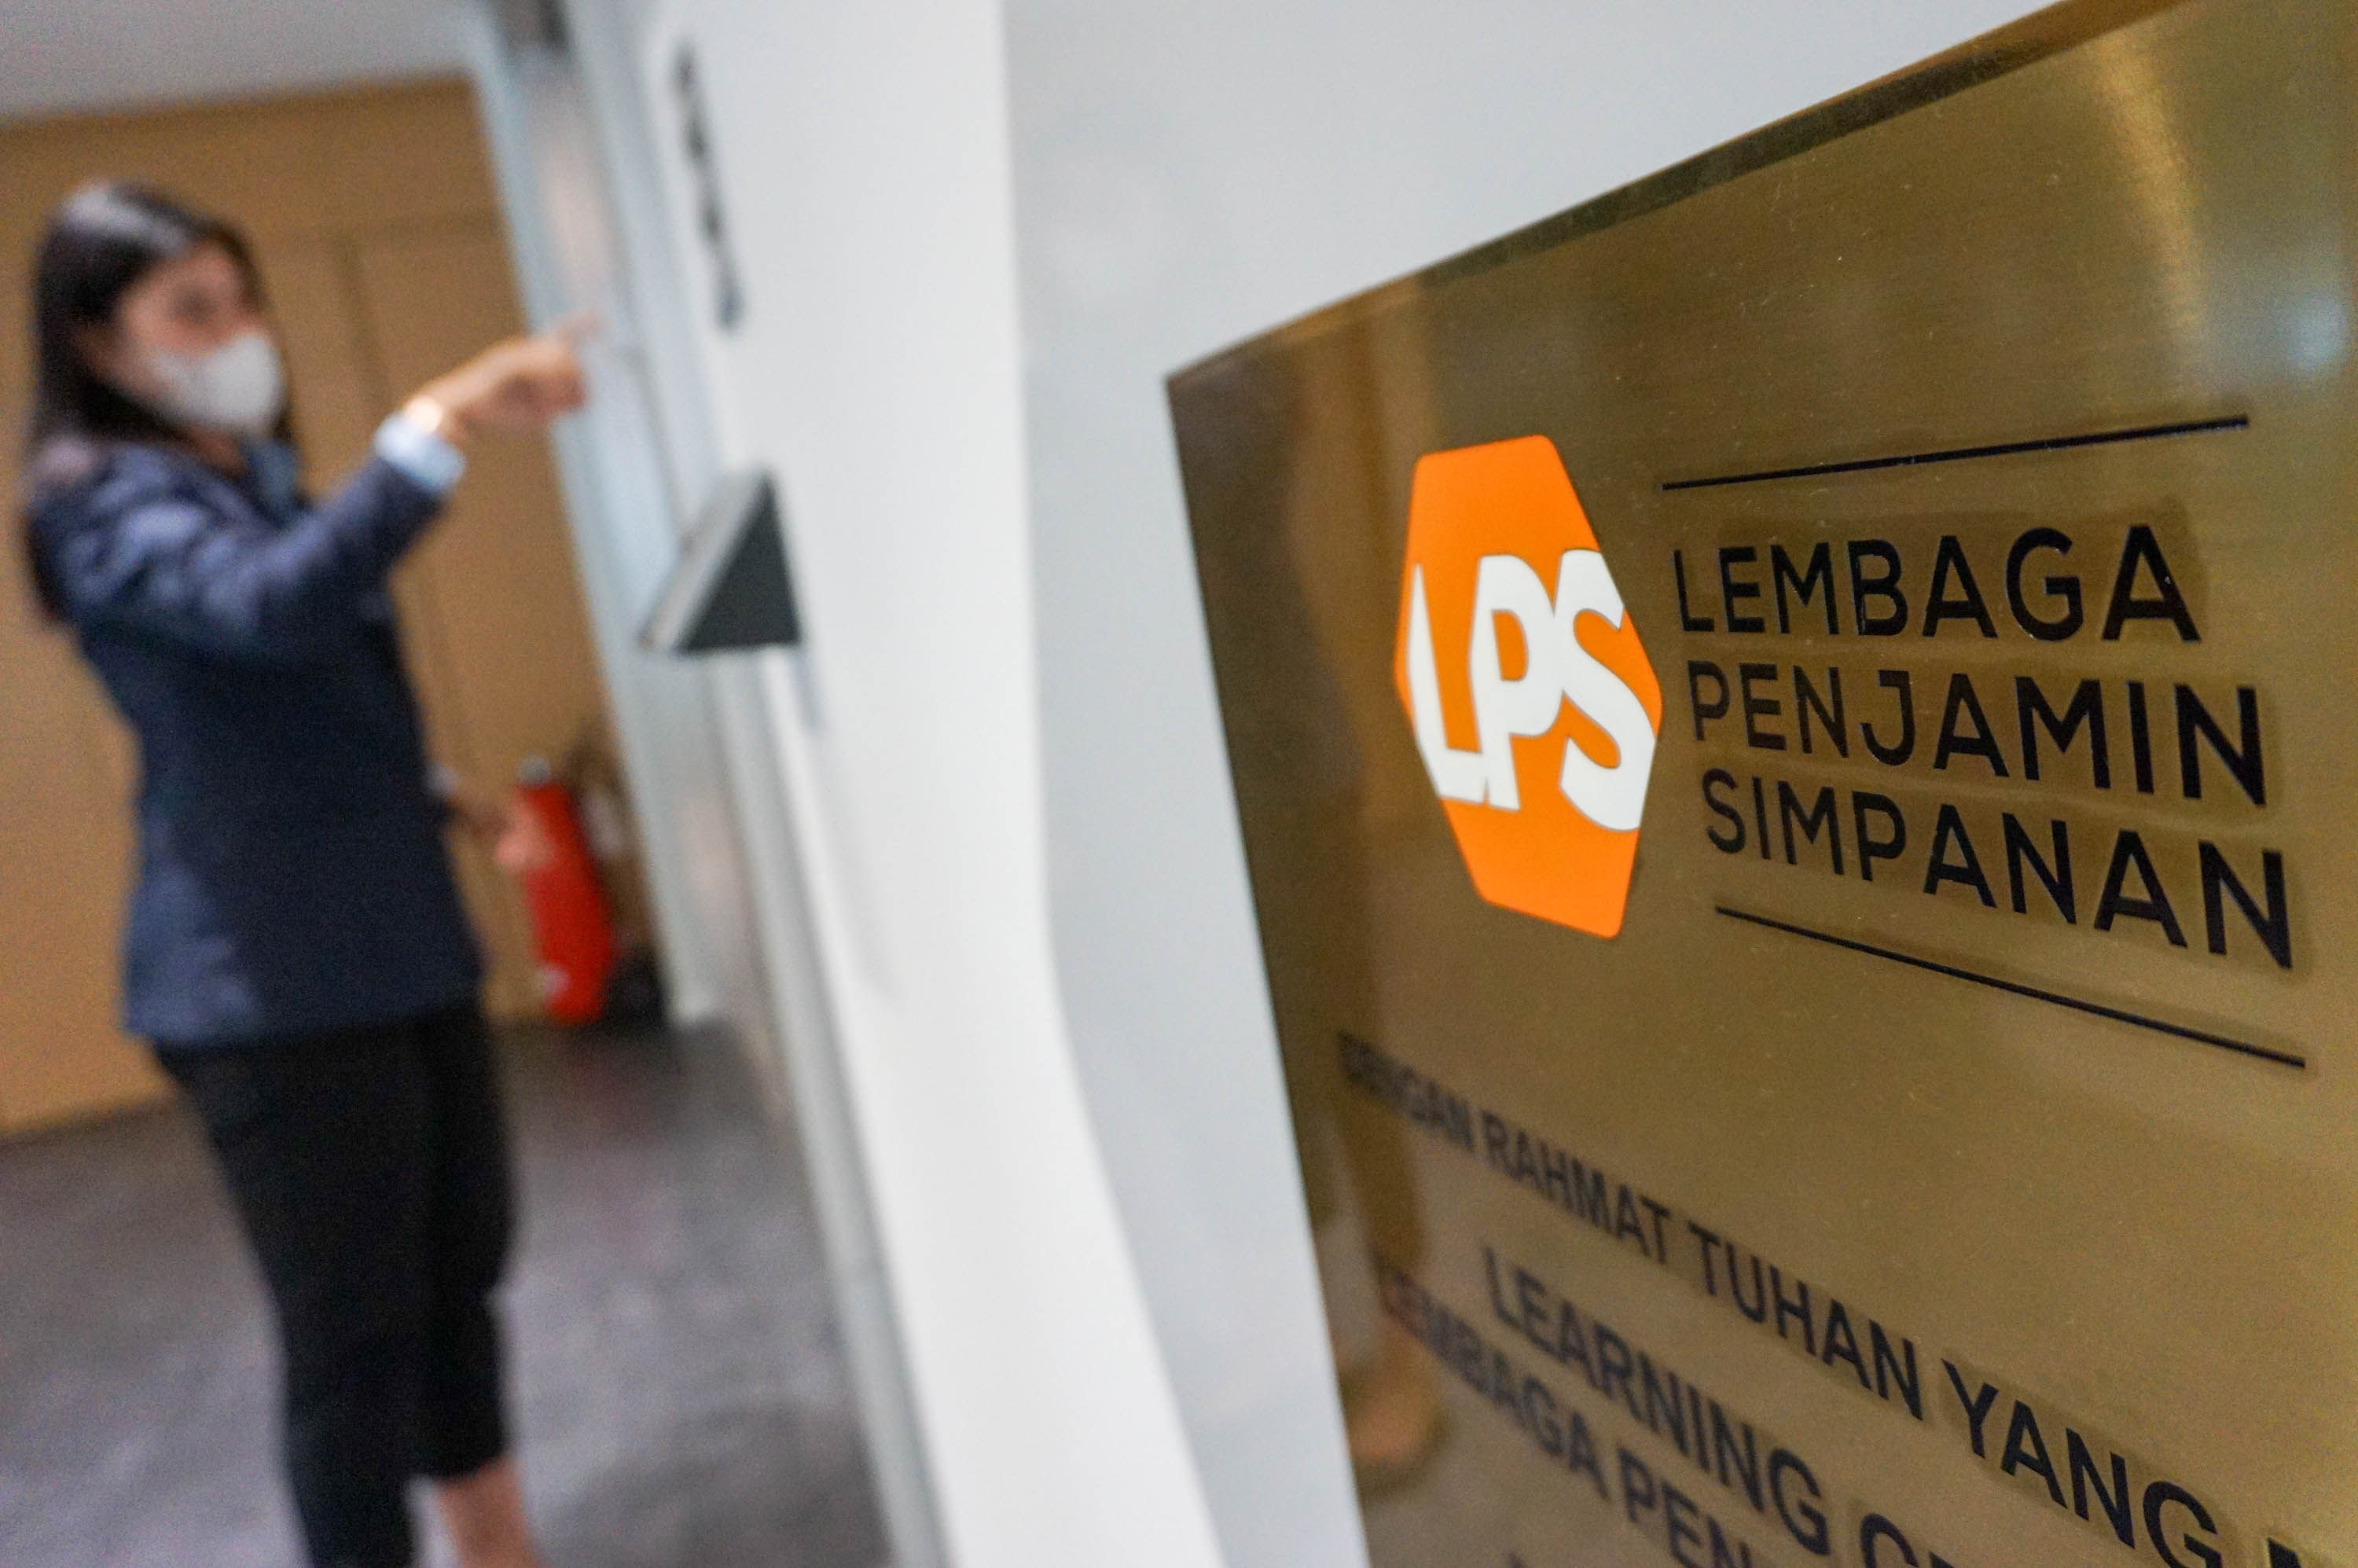 Karyawan beraktivitas di kantor Lembaga Penjamin Simpanan (LPS) di Jakarta, Senin, 9 Mei 2022. Foto: Ismail Pohan/TrenAsia